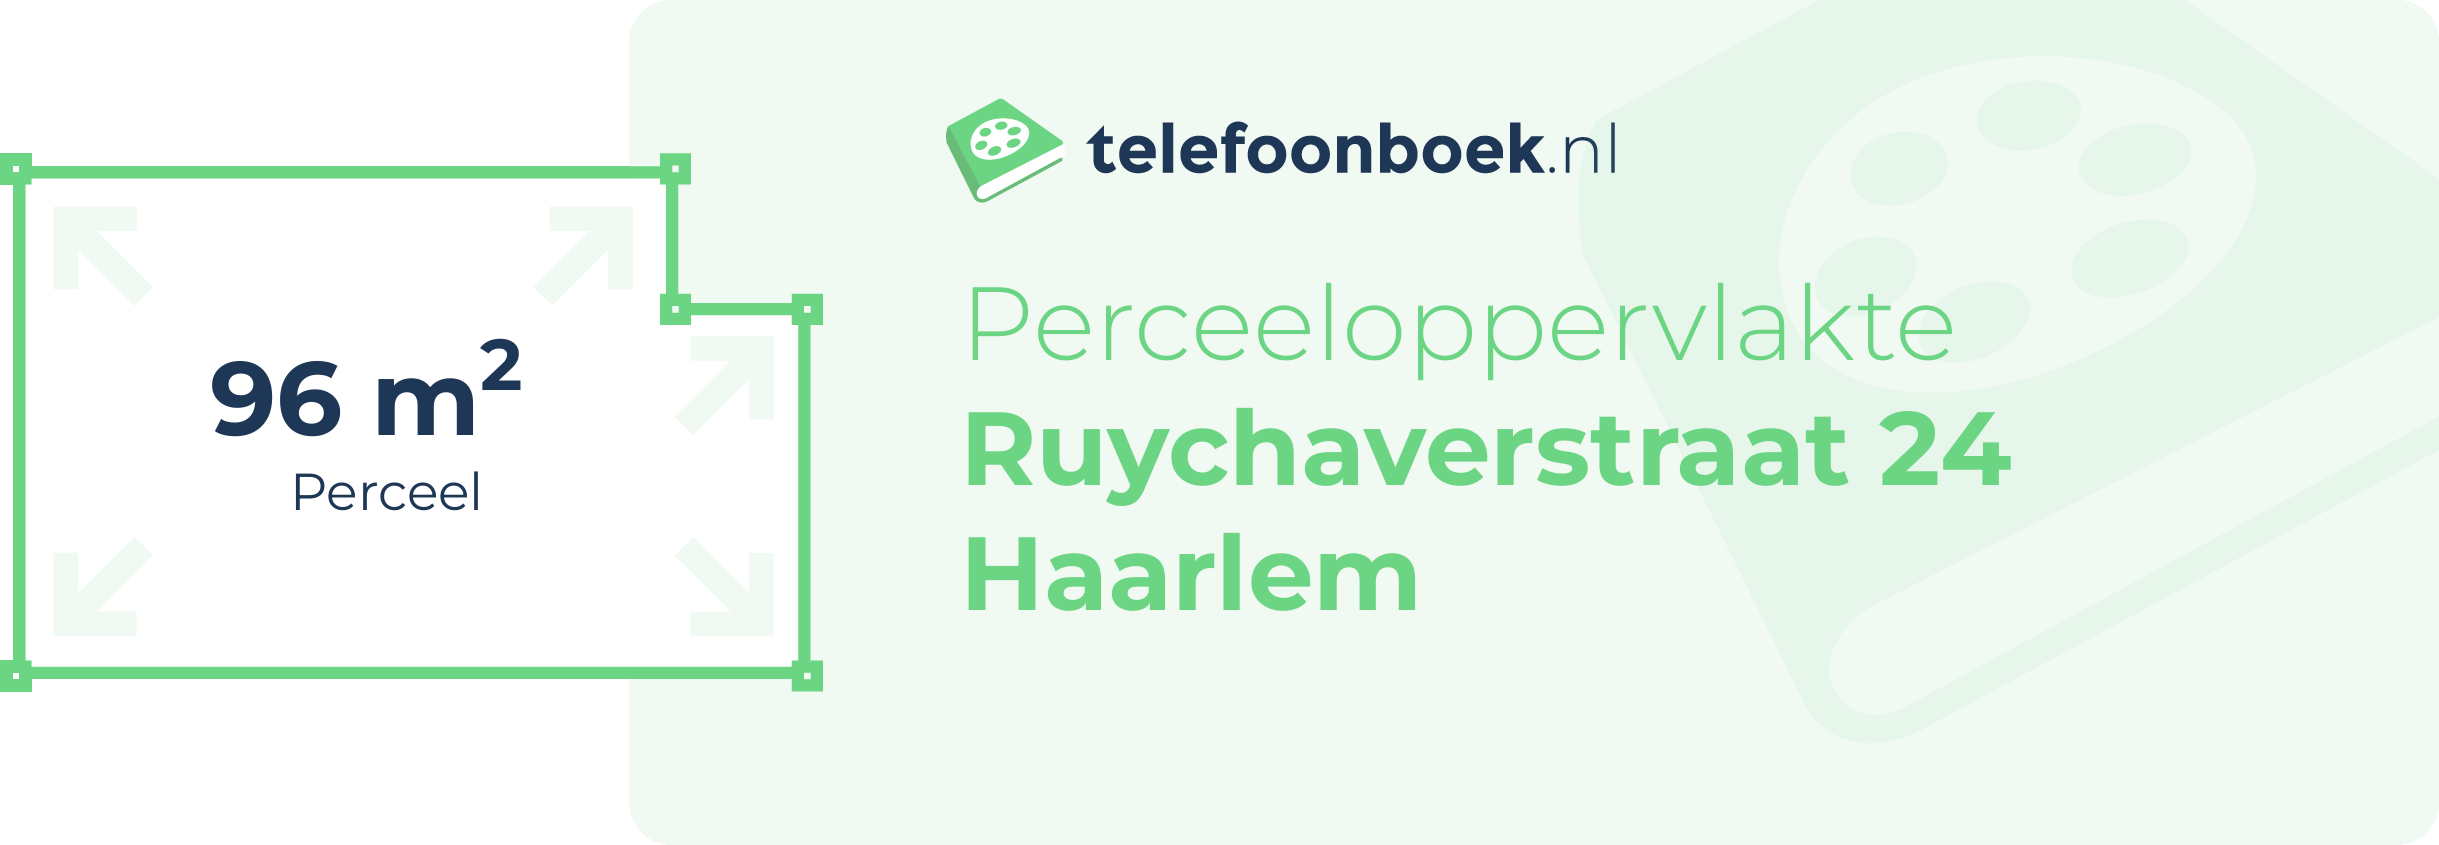 Perceeloppervlakte Ruychaverstraat 24 Haarlem